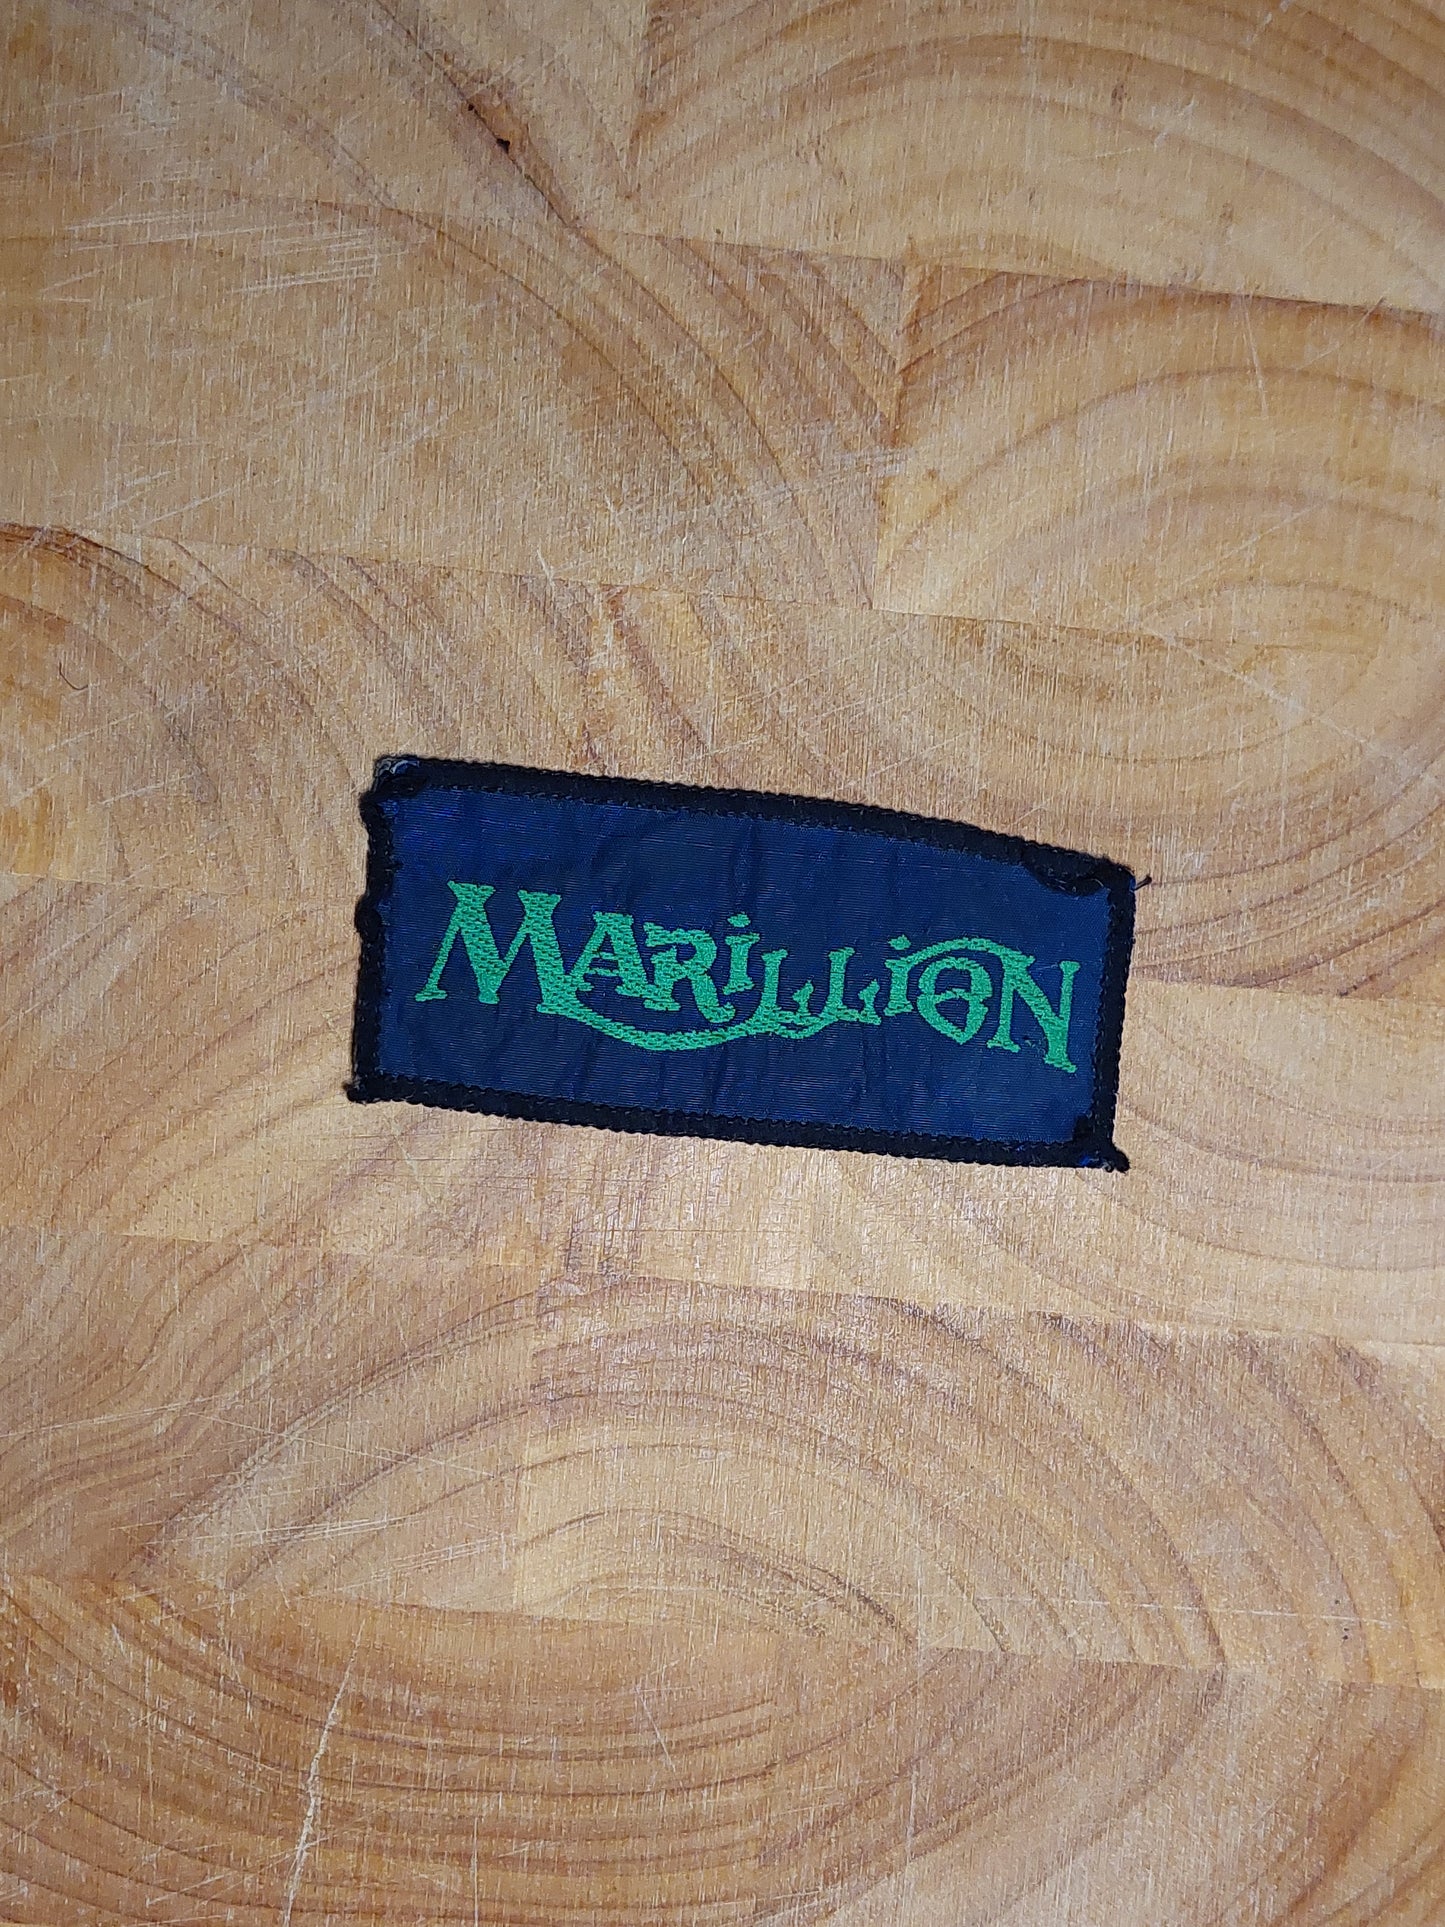 Marillion small logo